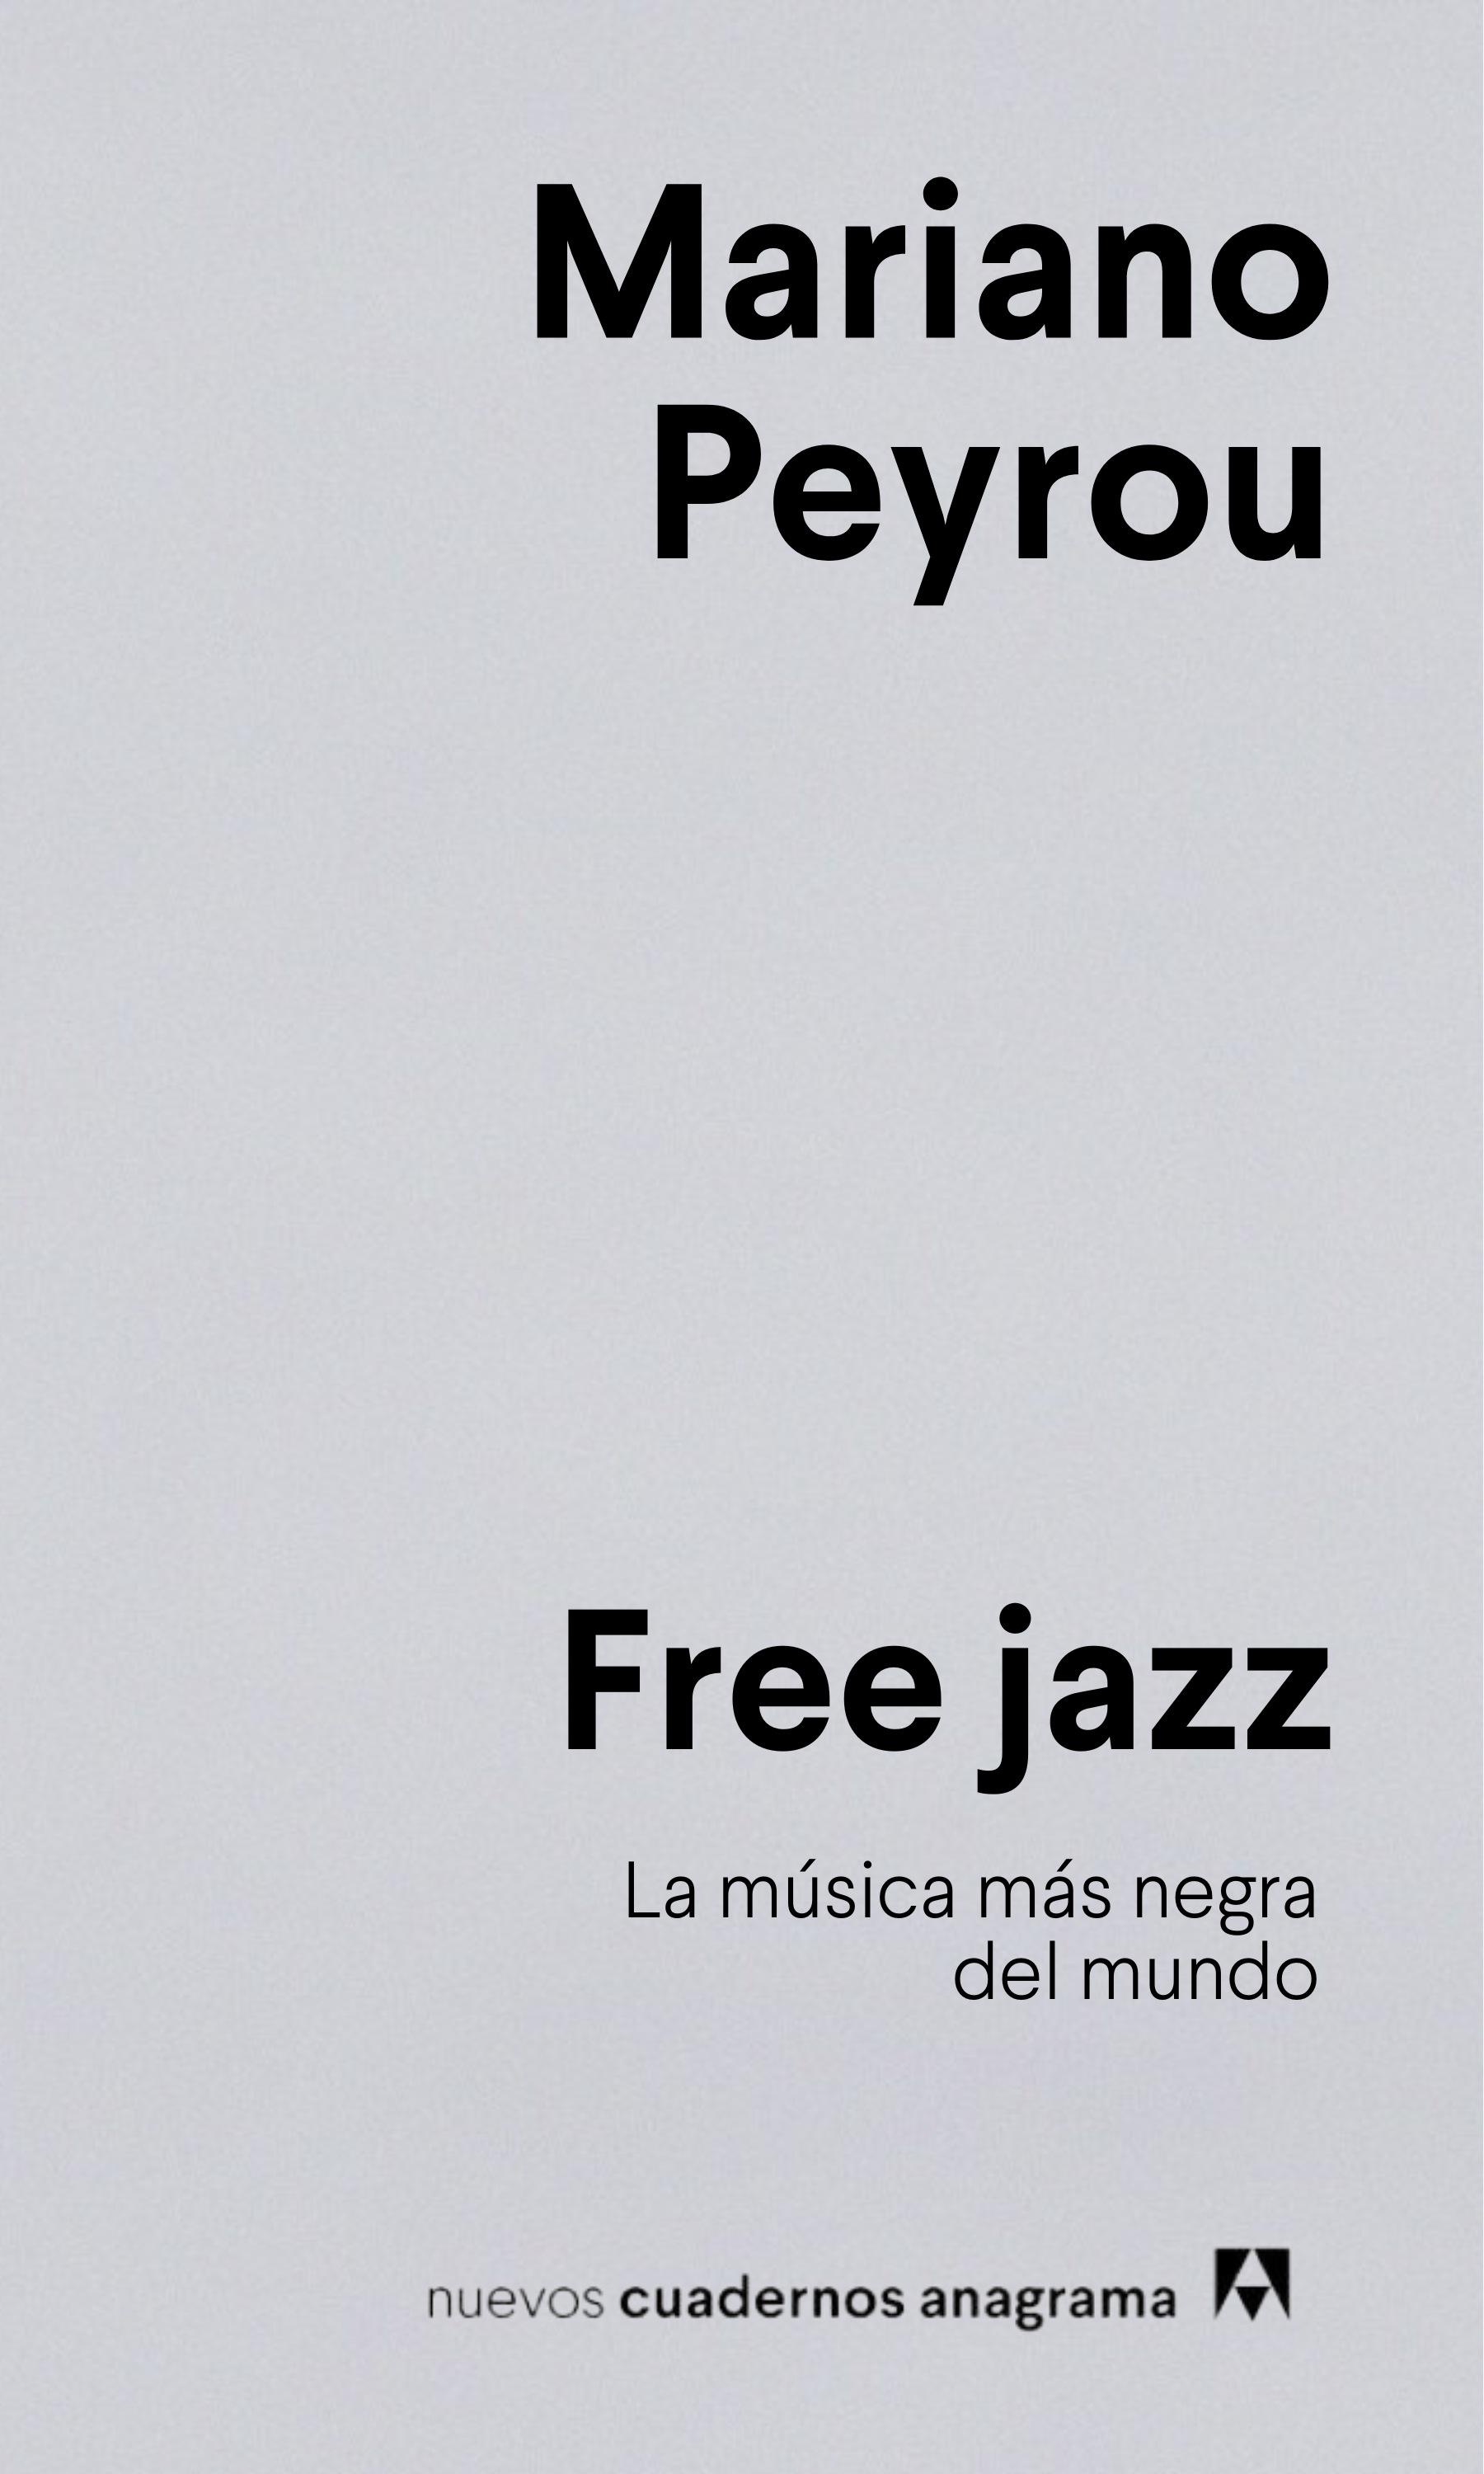 Free jazz "La música más negra del mundo"